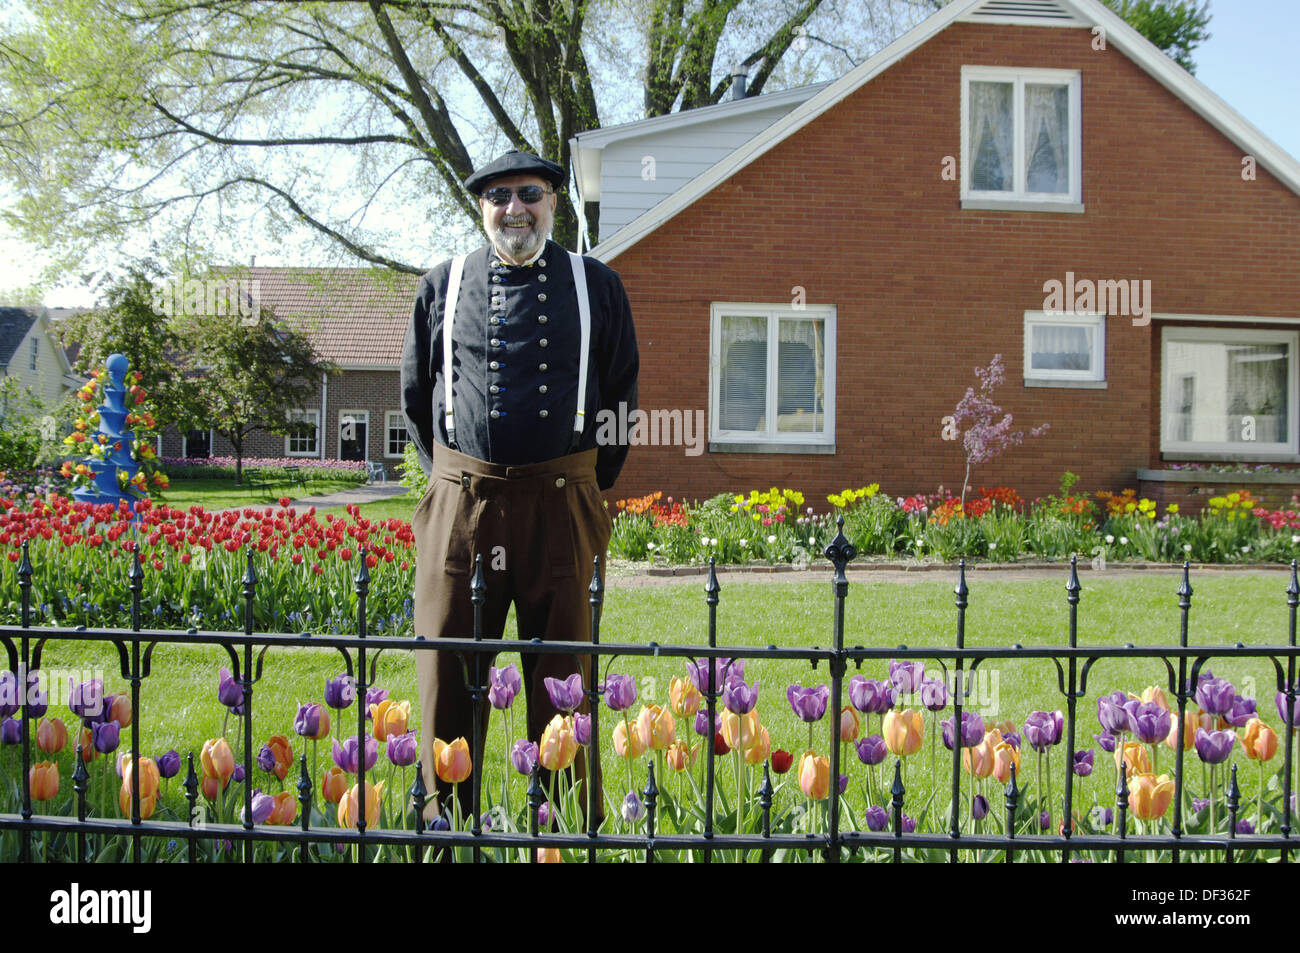 Un caballero holandés se visten de época en la aldea histórica en Pella, Iowa, EE.UU. Foto de stock